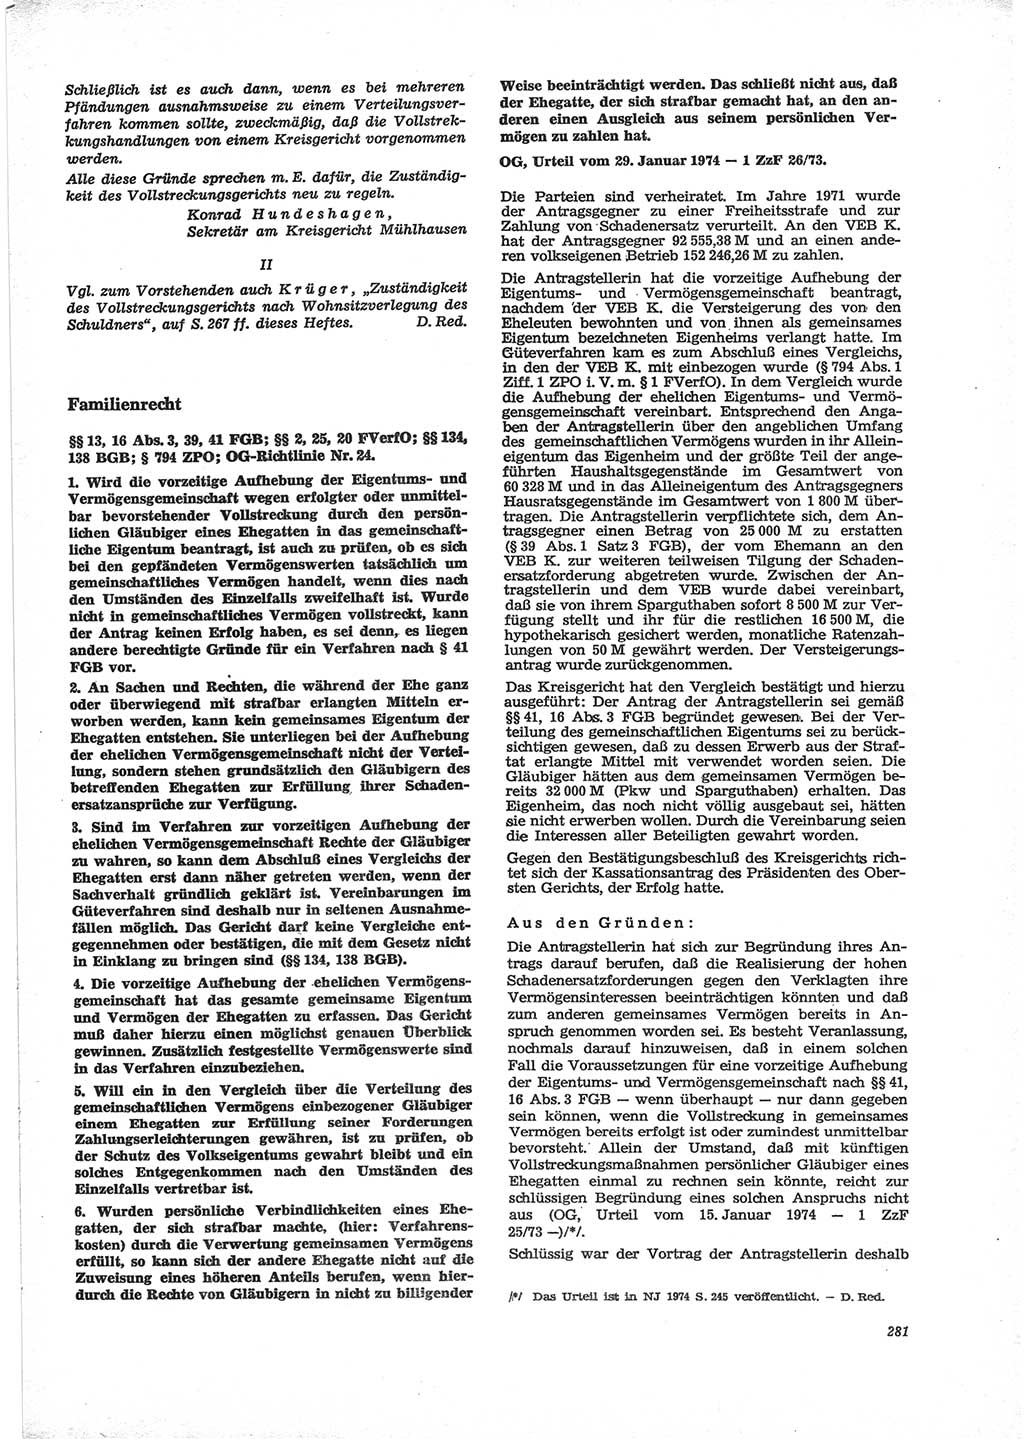 Neue Justiz (NJ), Zeitschrift für Recht und Rechtswissenschaft [Deutsche Demokratische Republik (DDR)], 28. Jahrgang 1974, Seite 281 (NJ DDR 1974, S. 281)